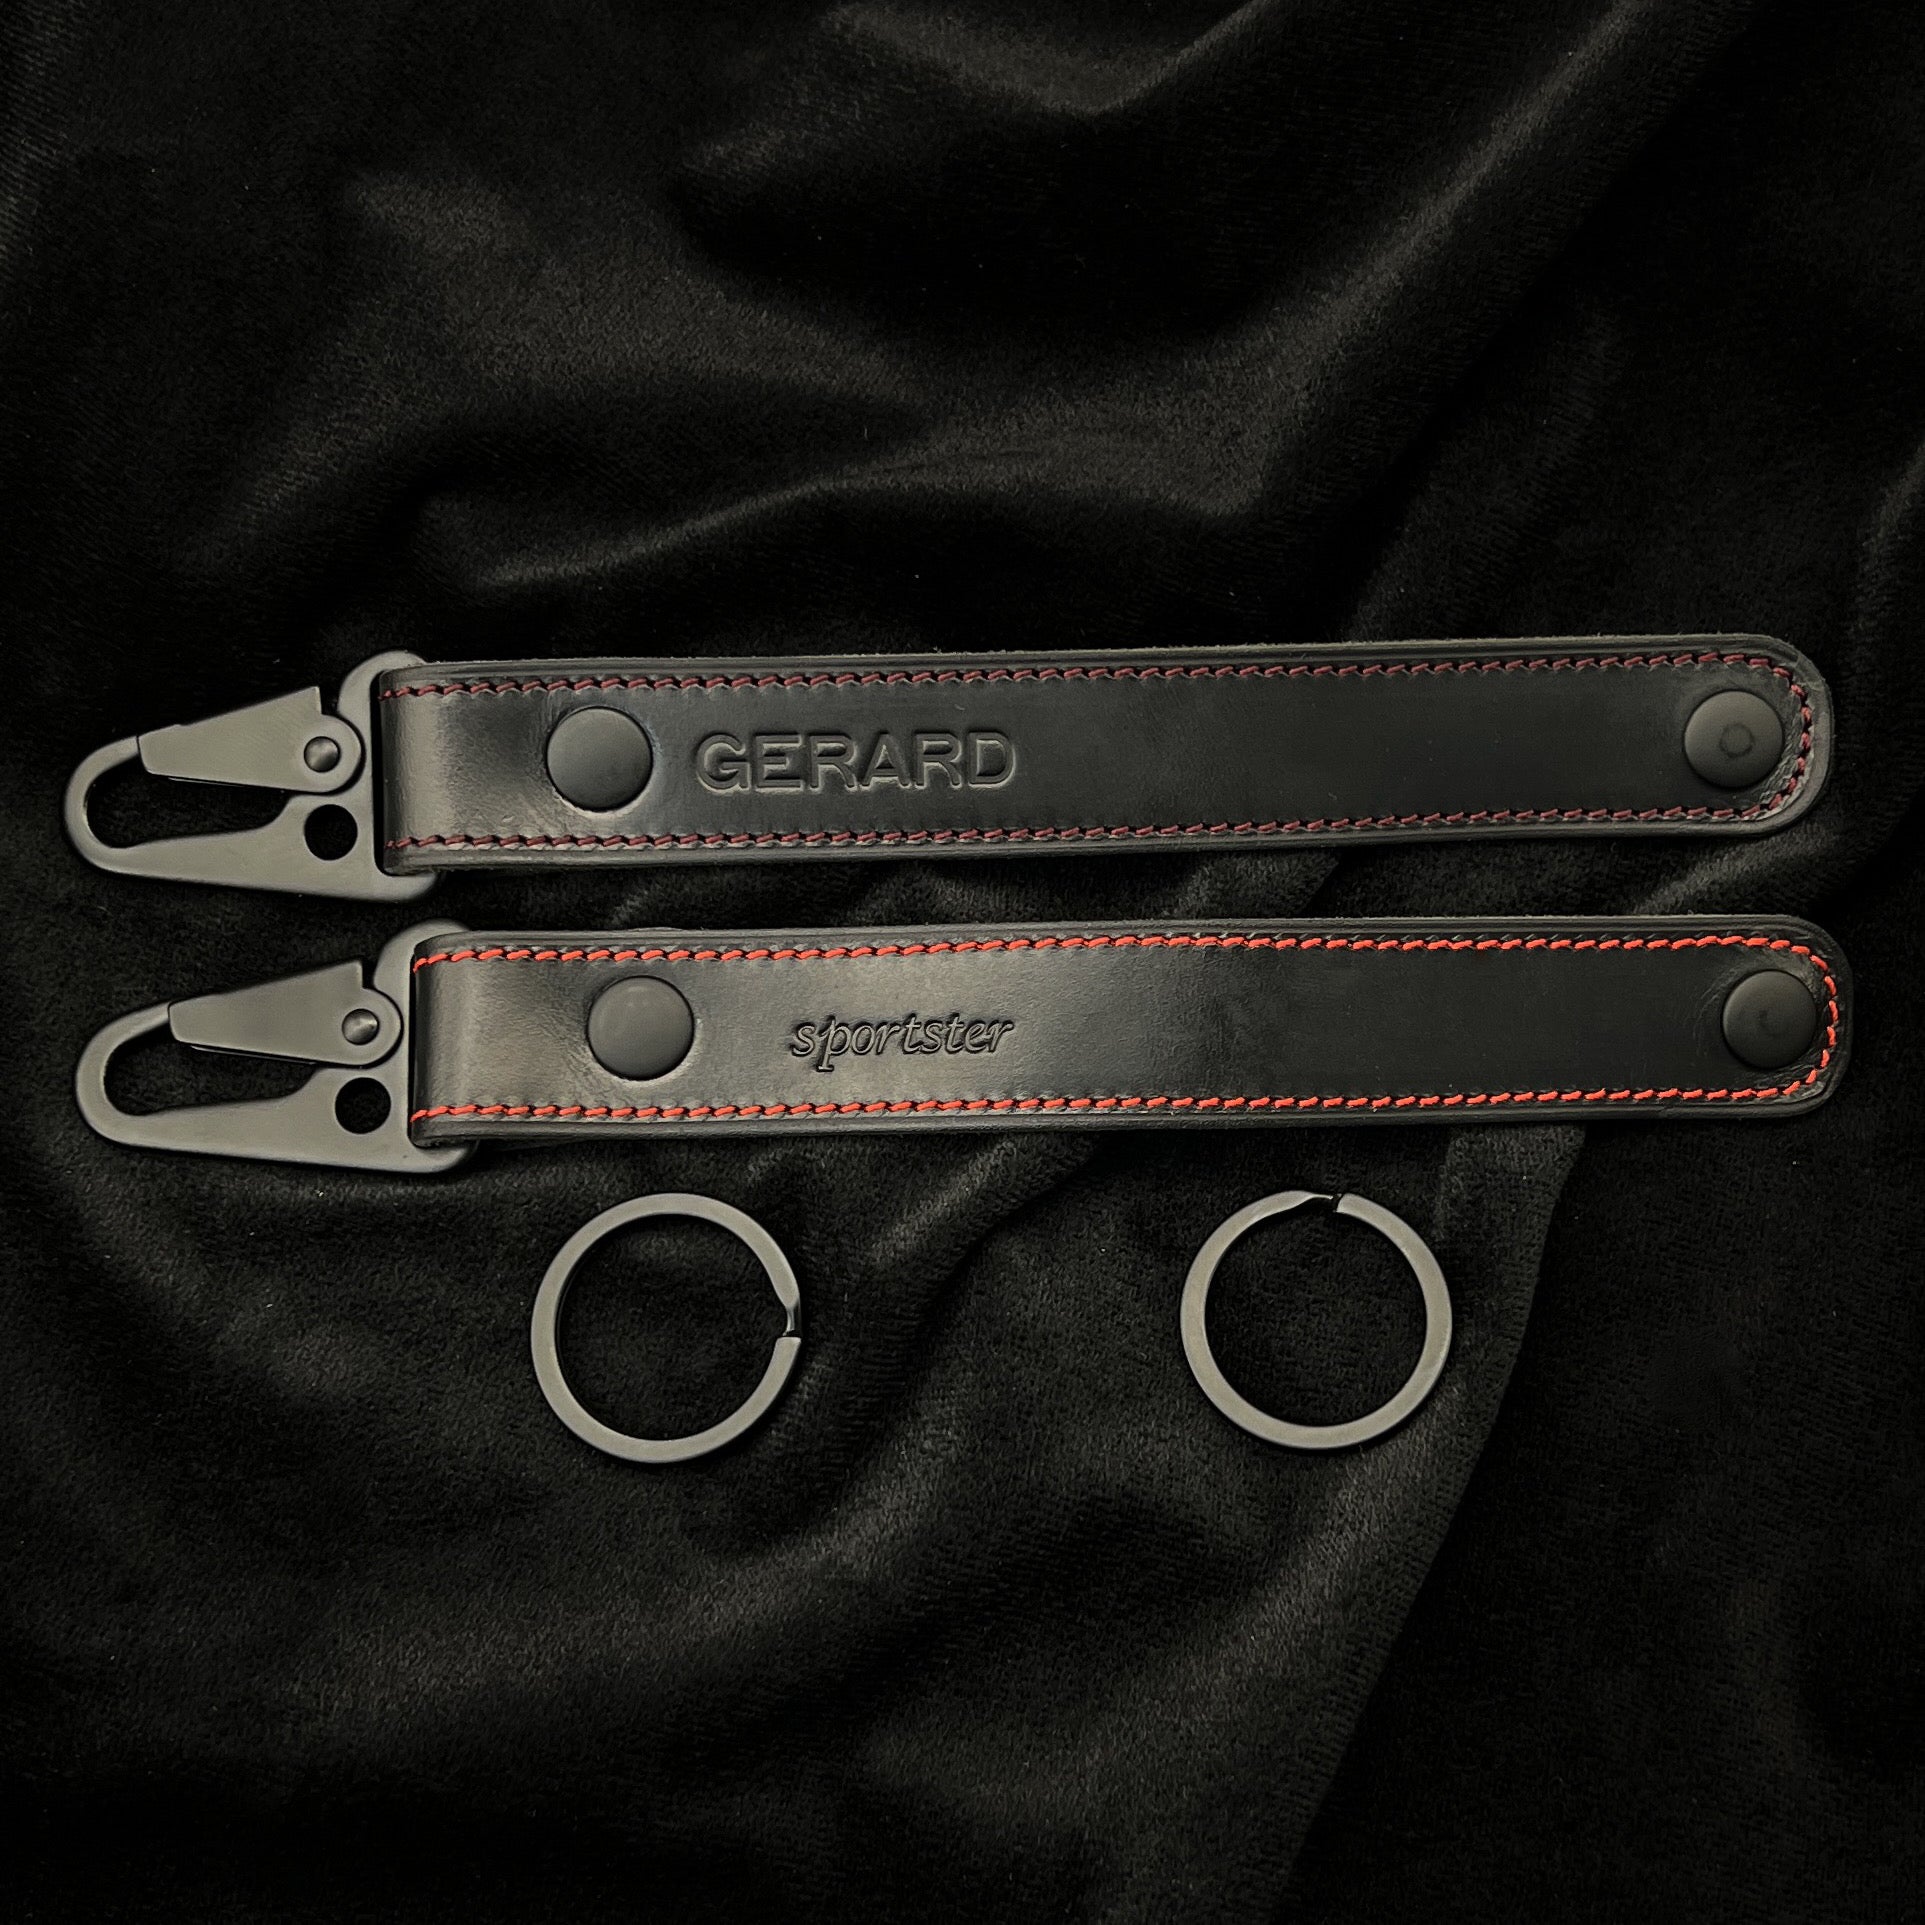 Belt Loop Leather Keychain - Brown - Nordic EDC